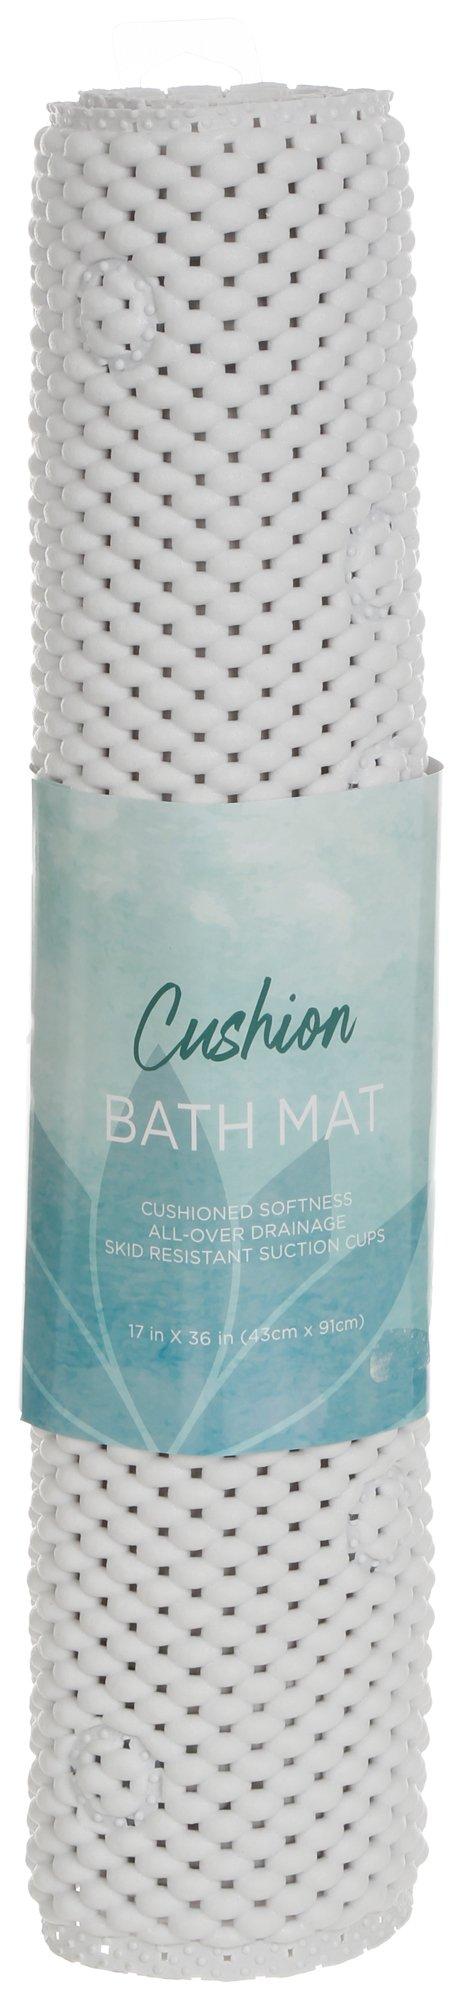 17x36 Cushioned Bath Mat